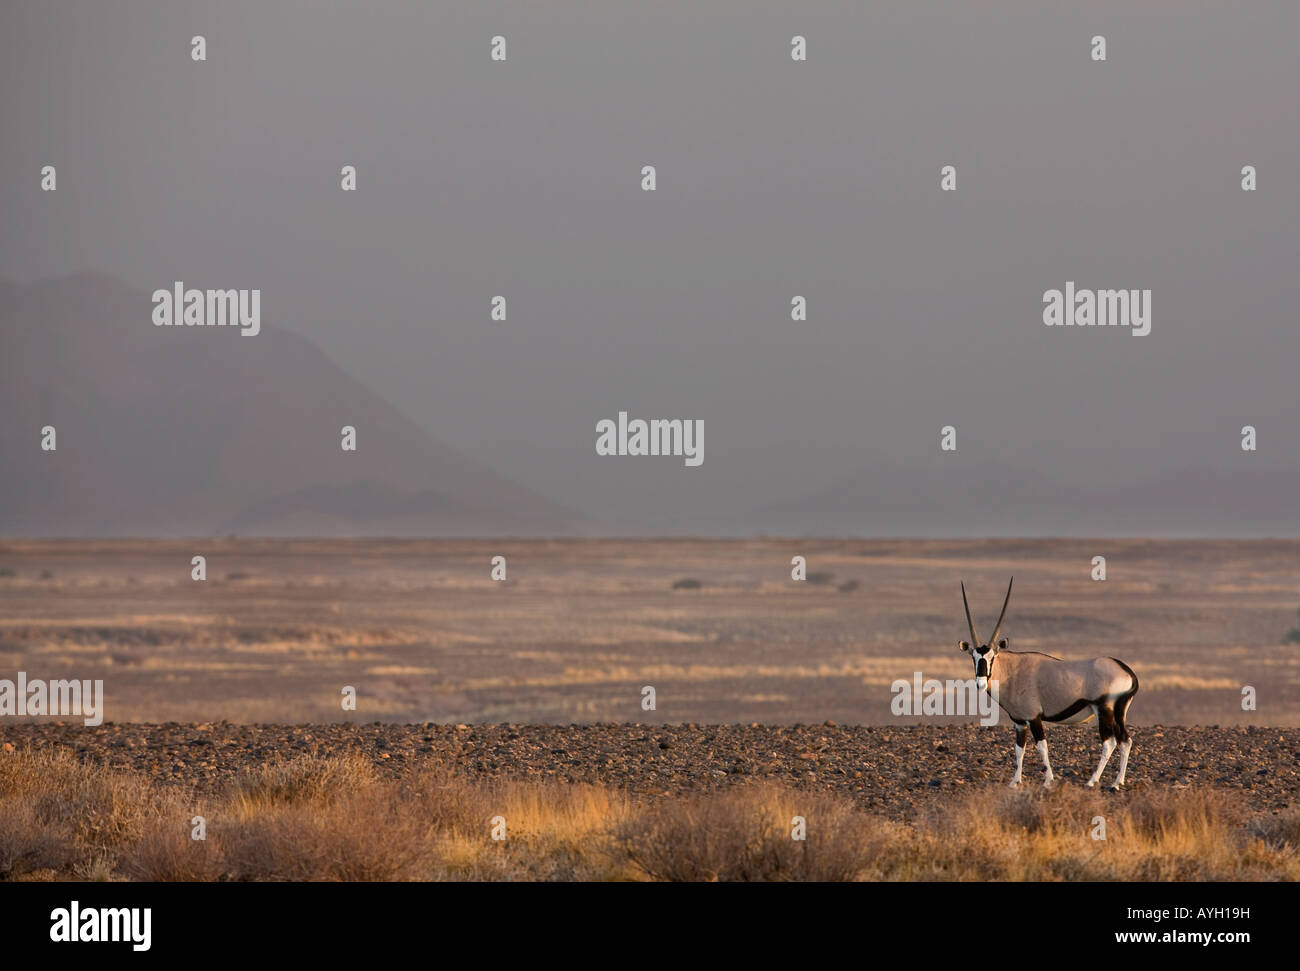 Antlered Gemsbok, Namib Desert, Namibia, Africa Stock Photo